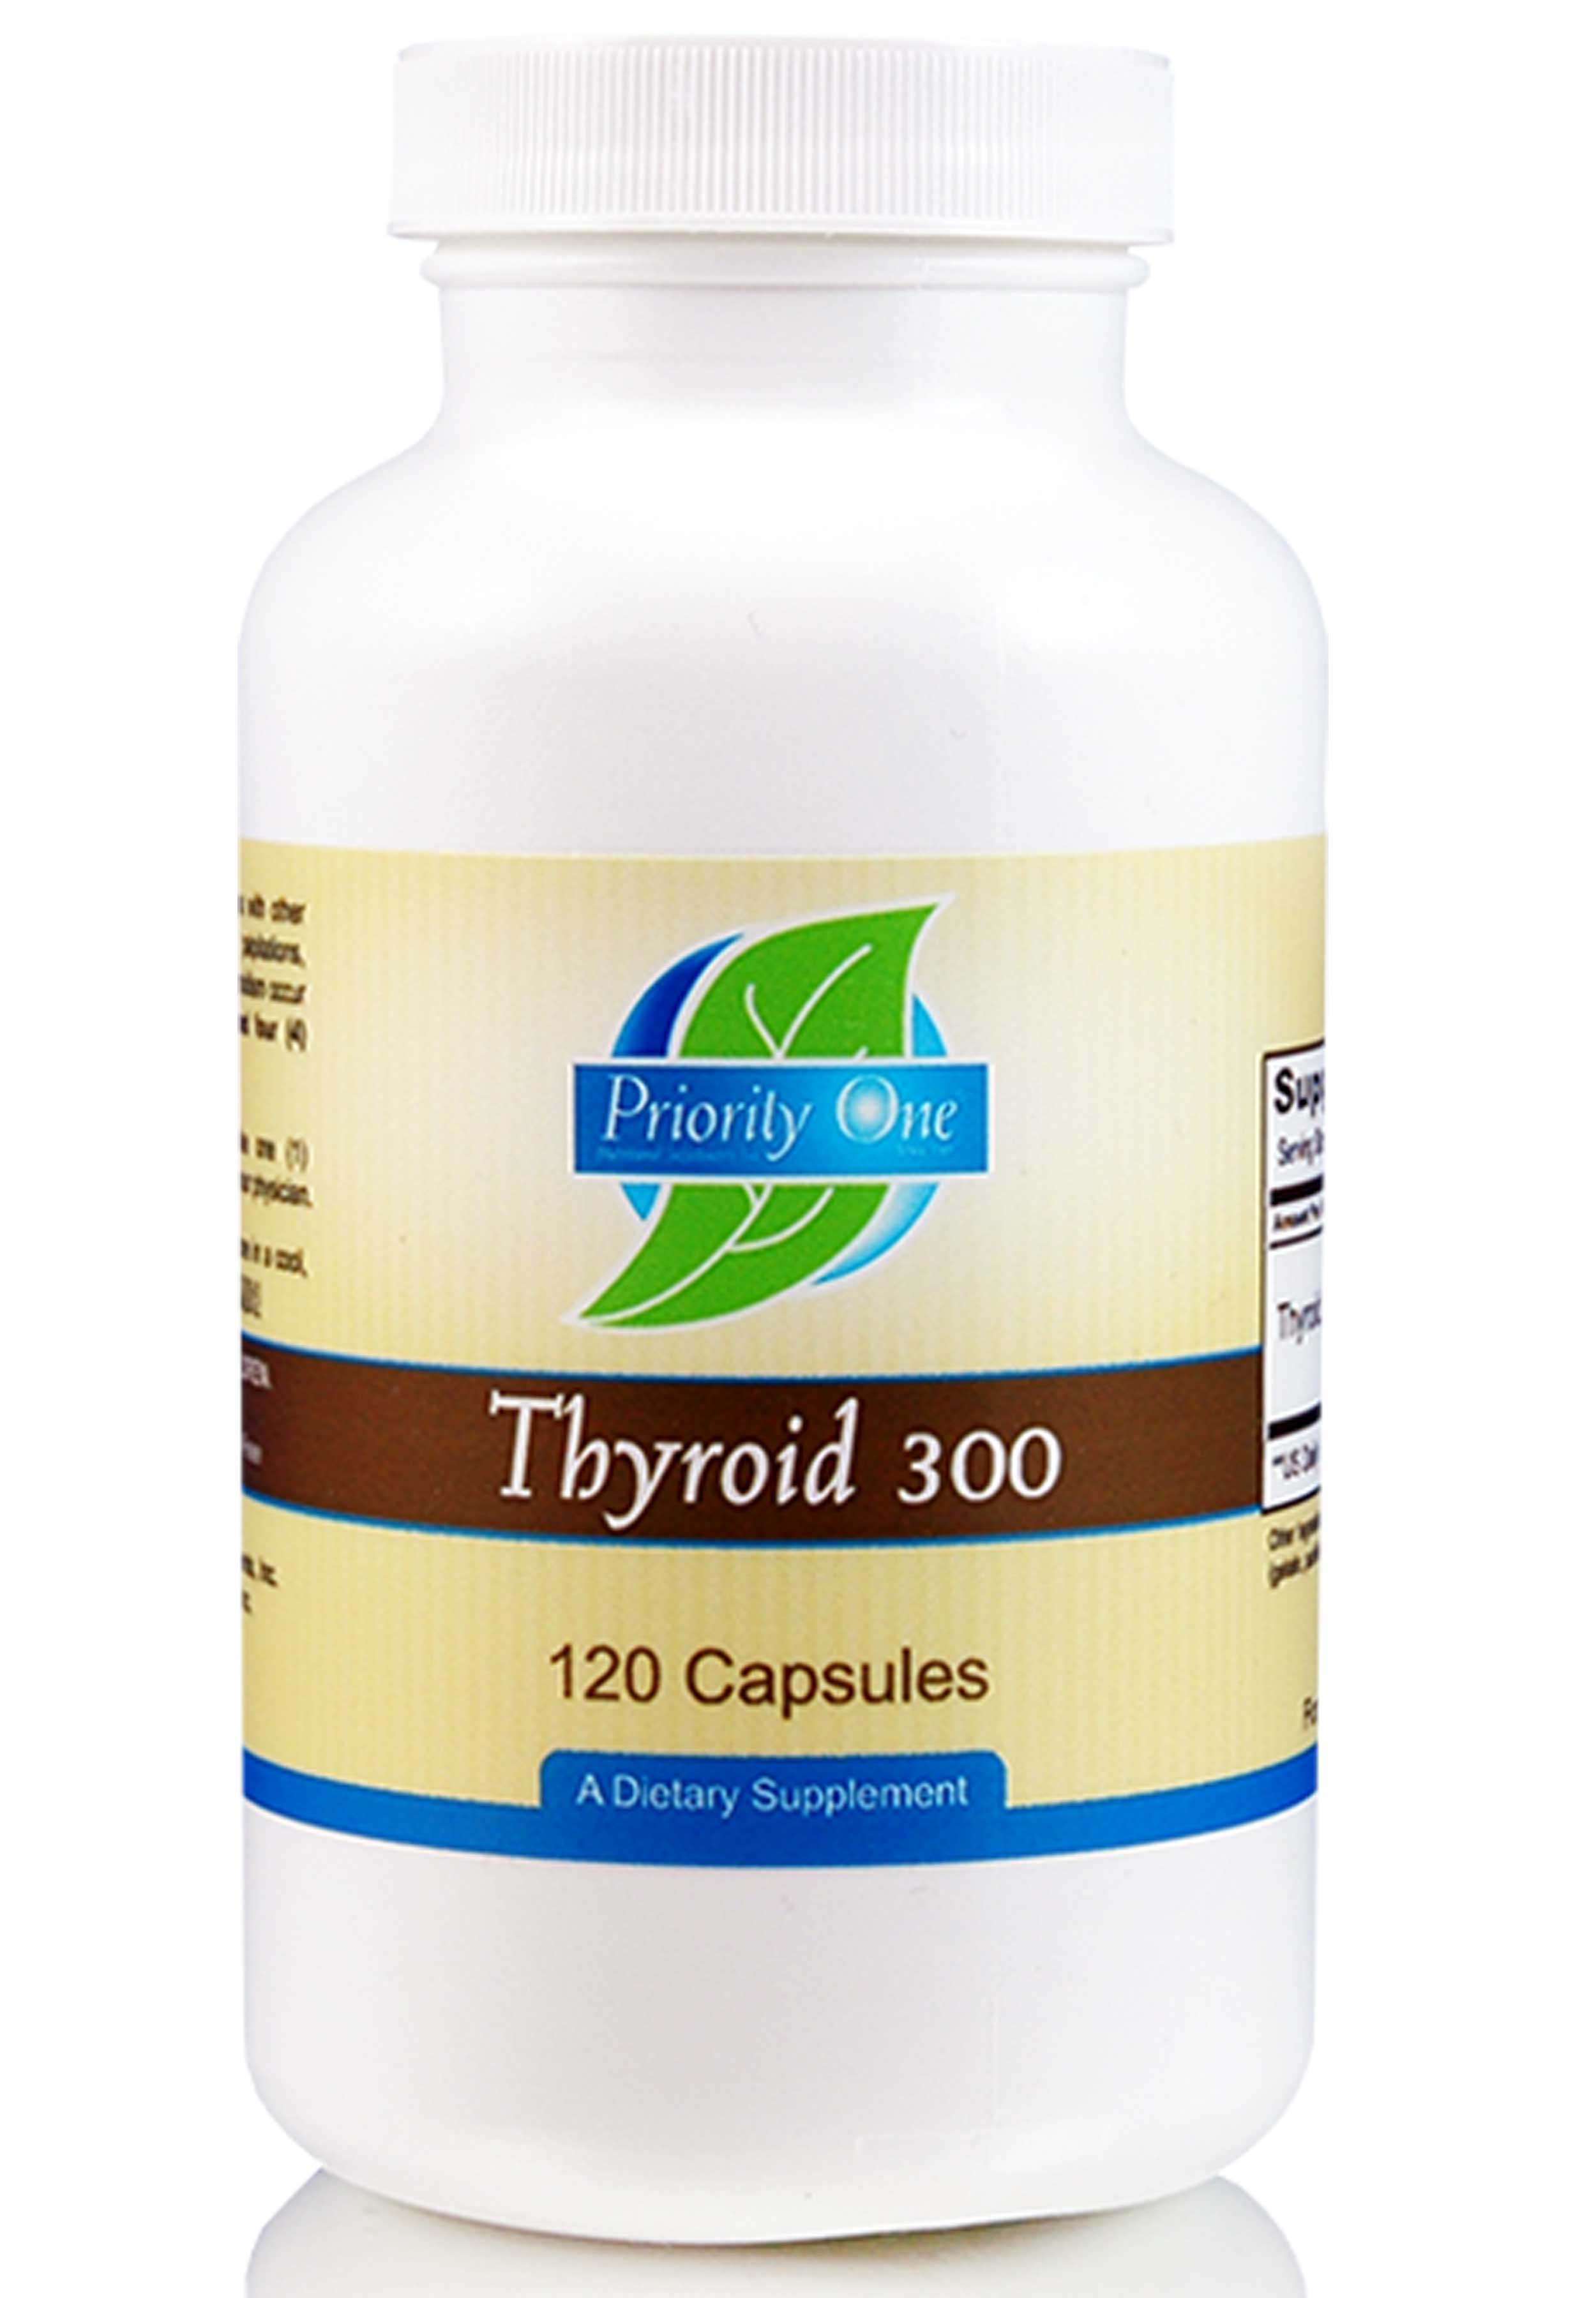 Priority One Thyroid